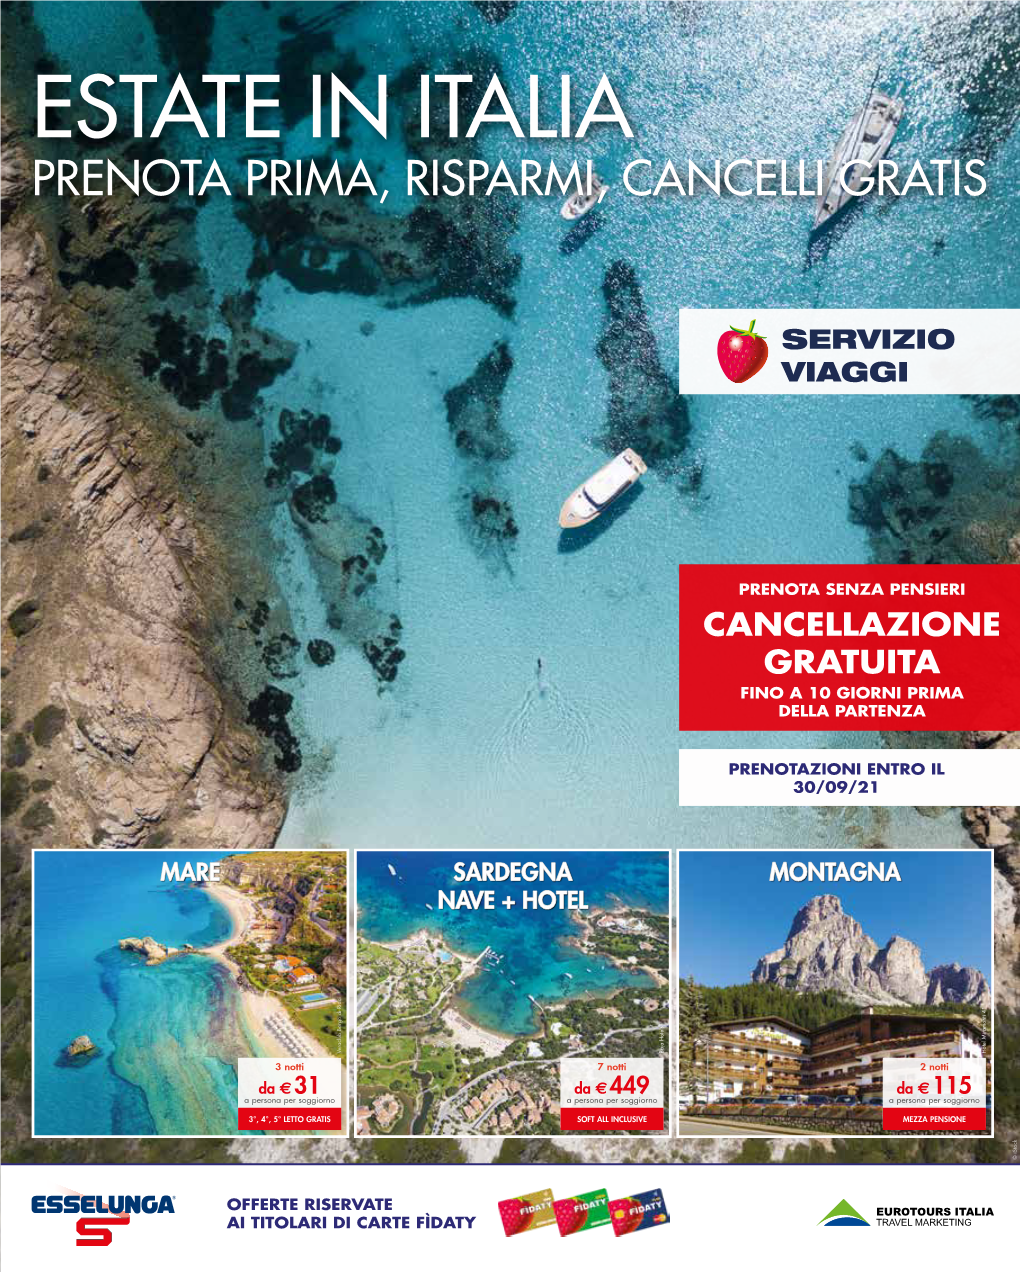 Estate in Italia Prenota Prima, Risparmi, Cancelli Gratis